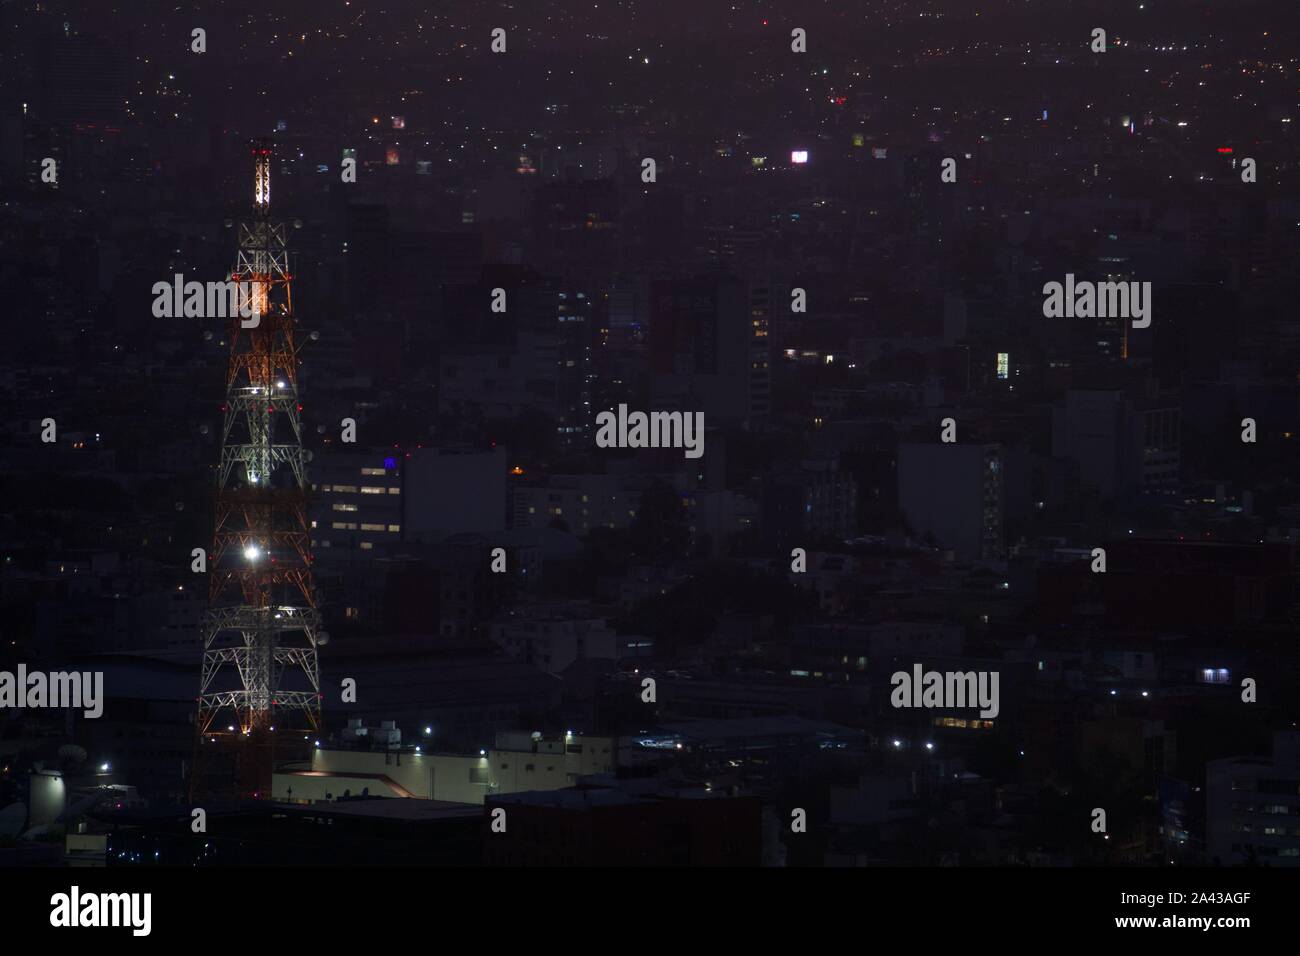 Vintage rot und weiß Radio Tower bei Nacht, die Lichter der Stadt und städtische Dichte gesichert. Mexiko City, Mexiko. Stockfoto